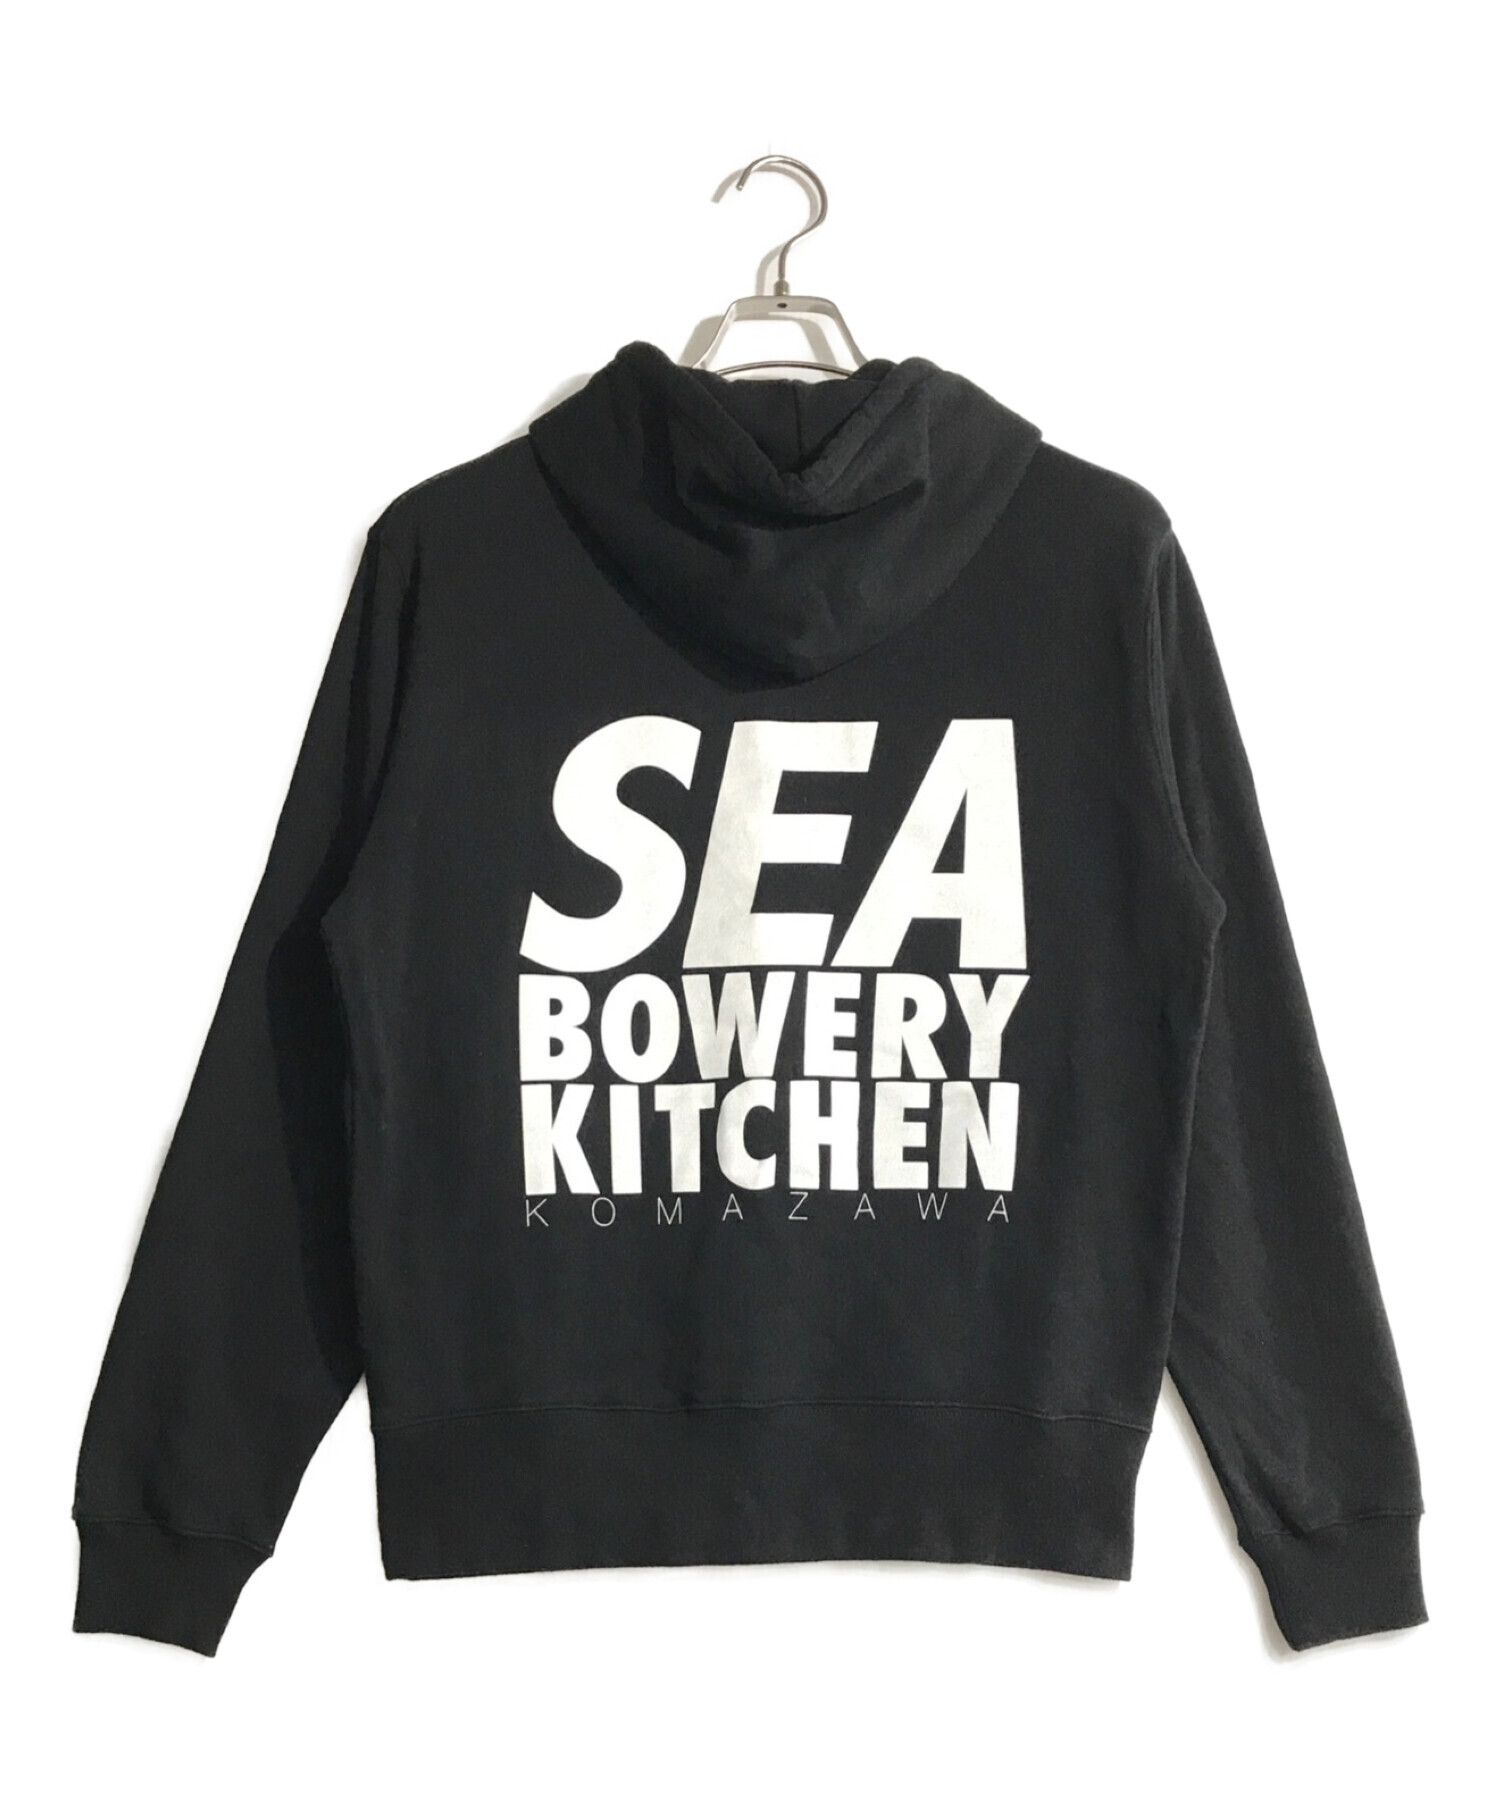 スーパーセール wind and sea × bowery kitchen パーカー tdh